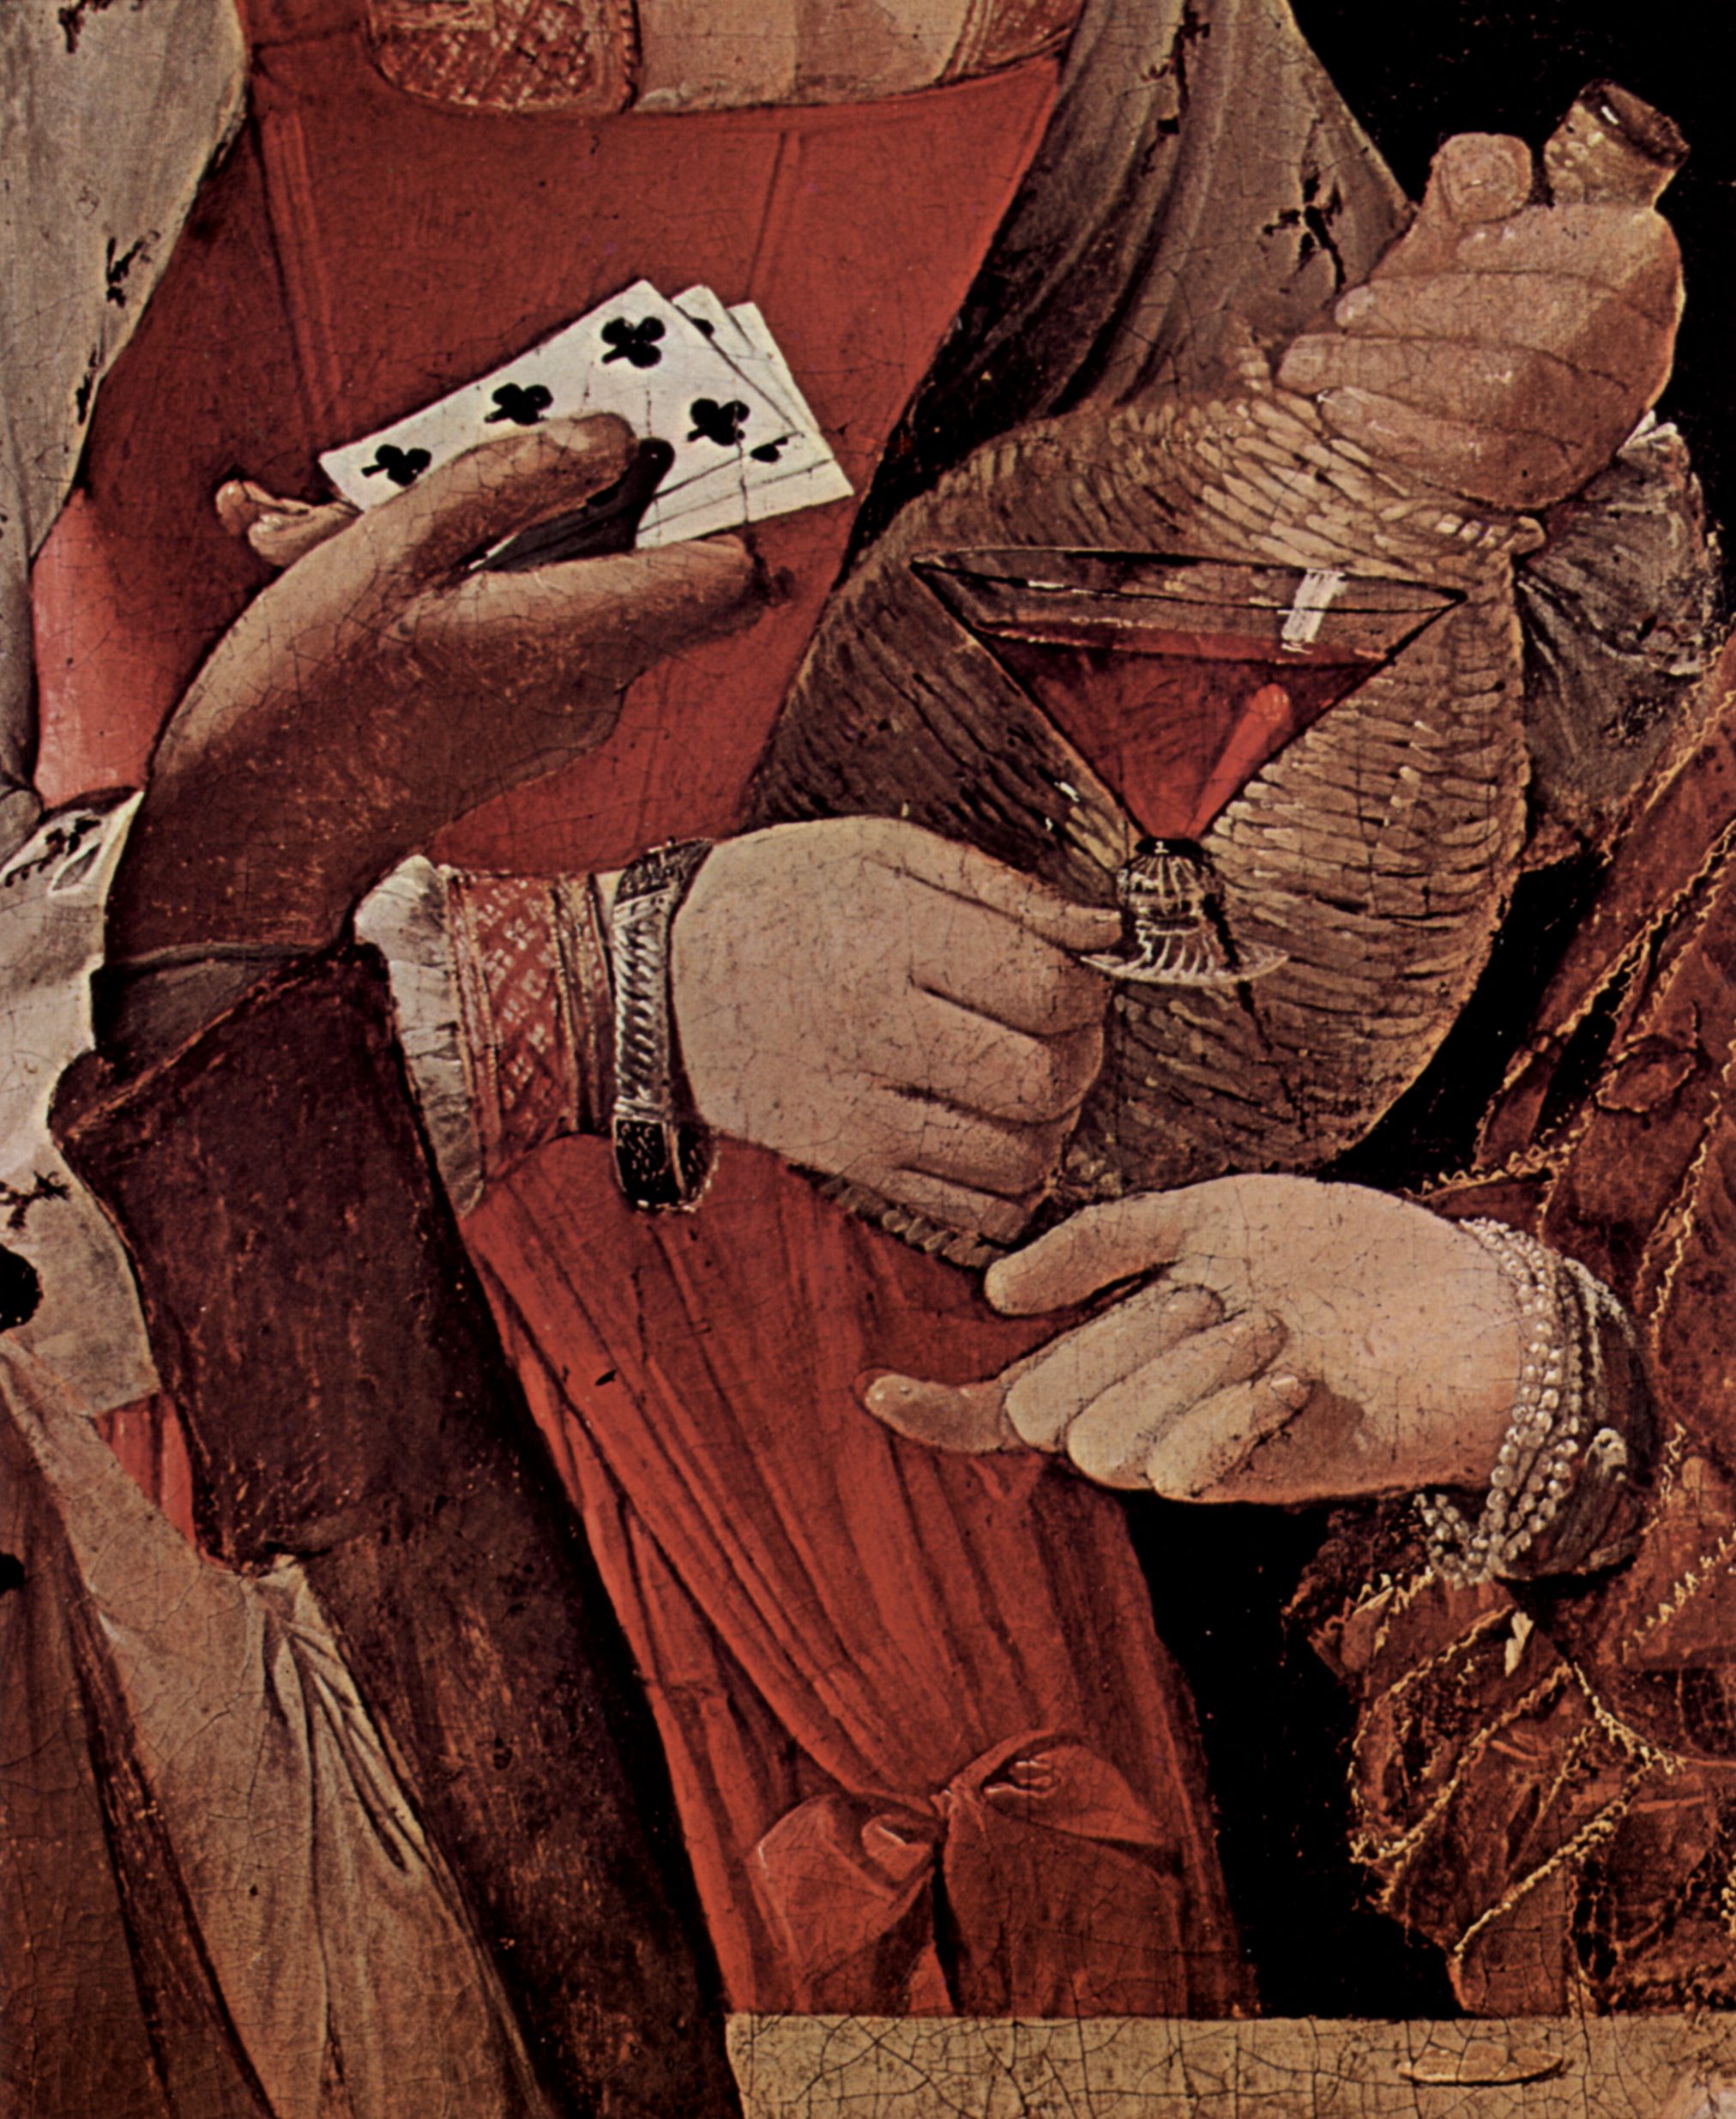 Georges de La Tour: Der Falschspieler, mit Kreuz-As, Detail: Spielkarten